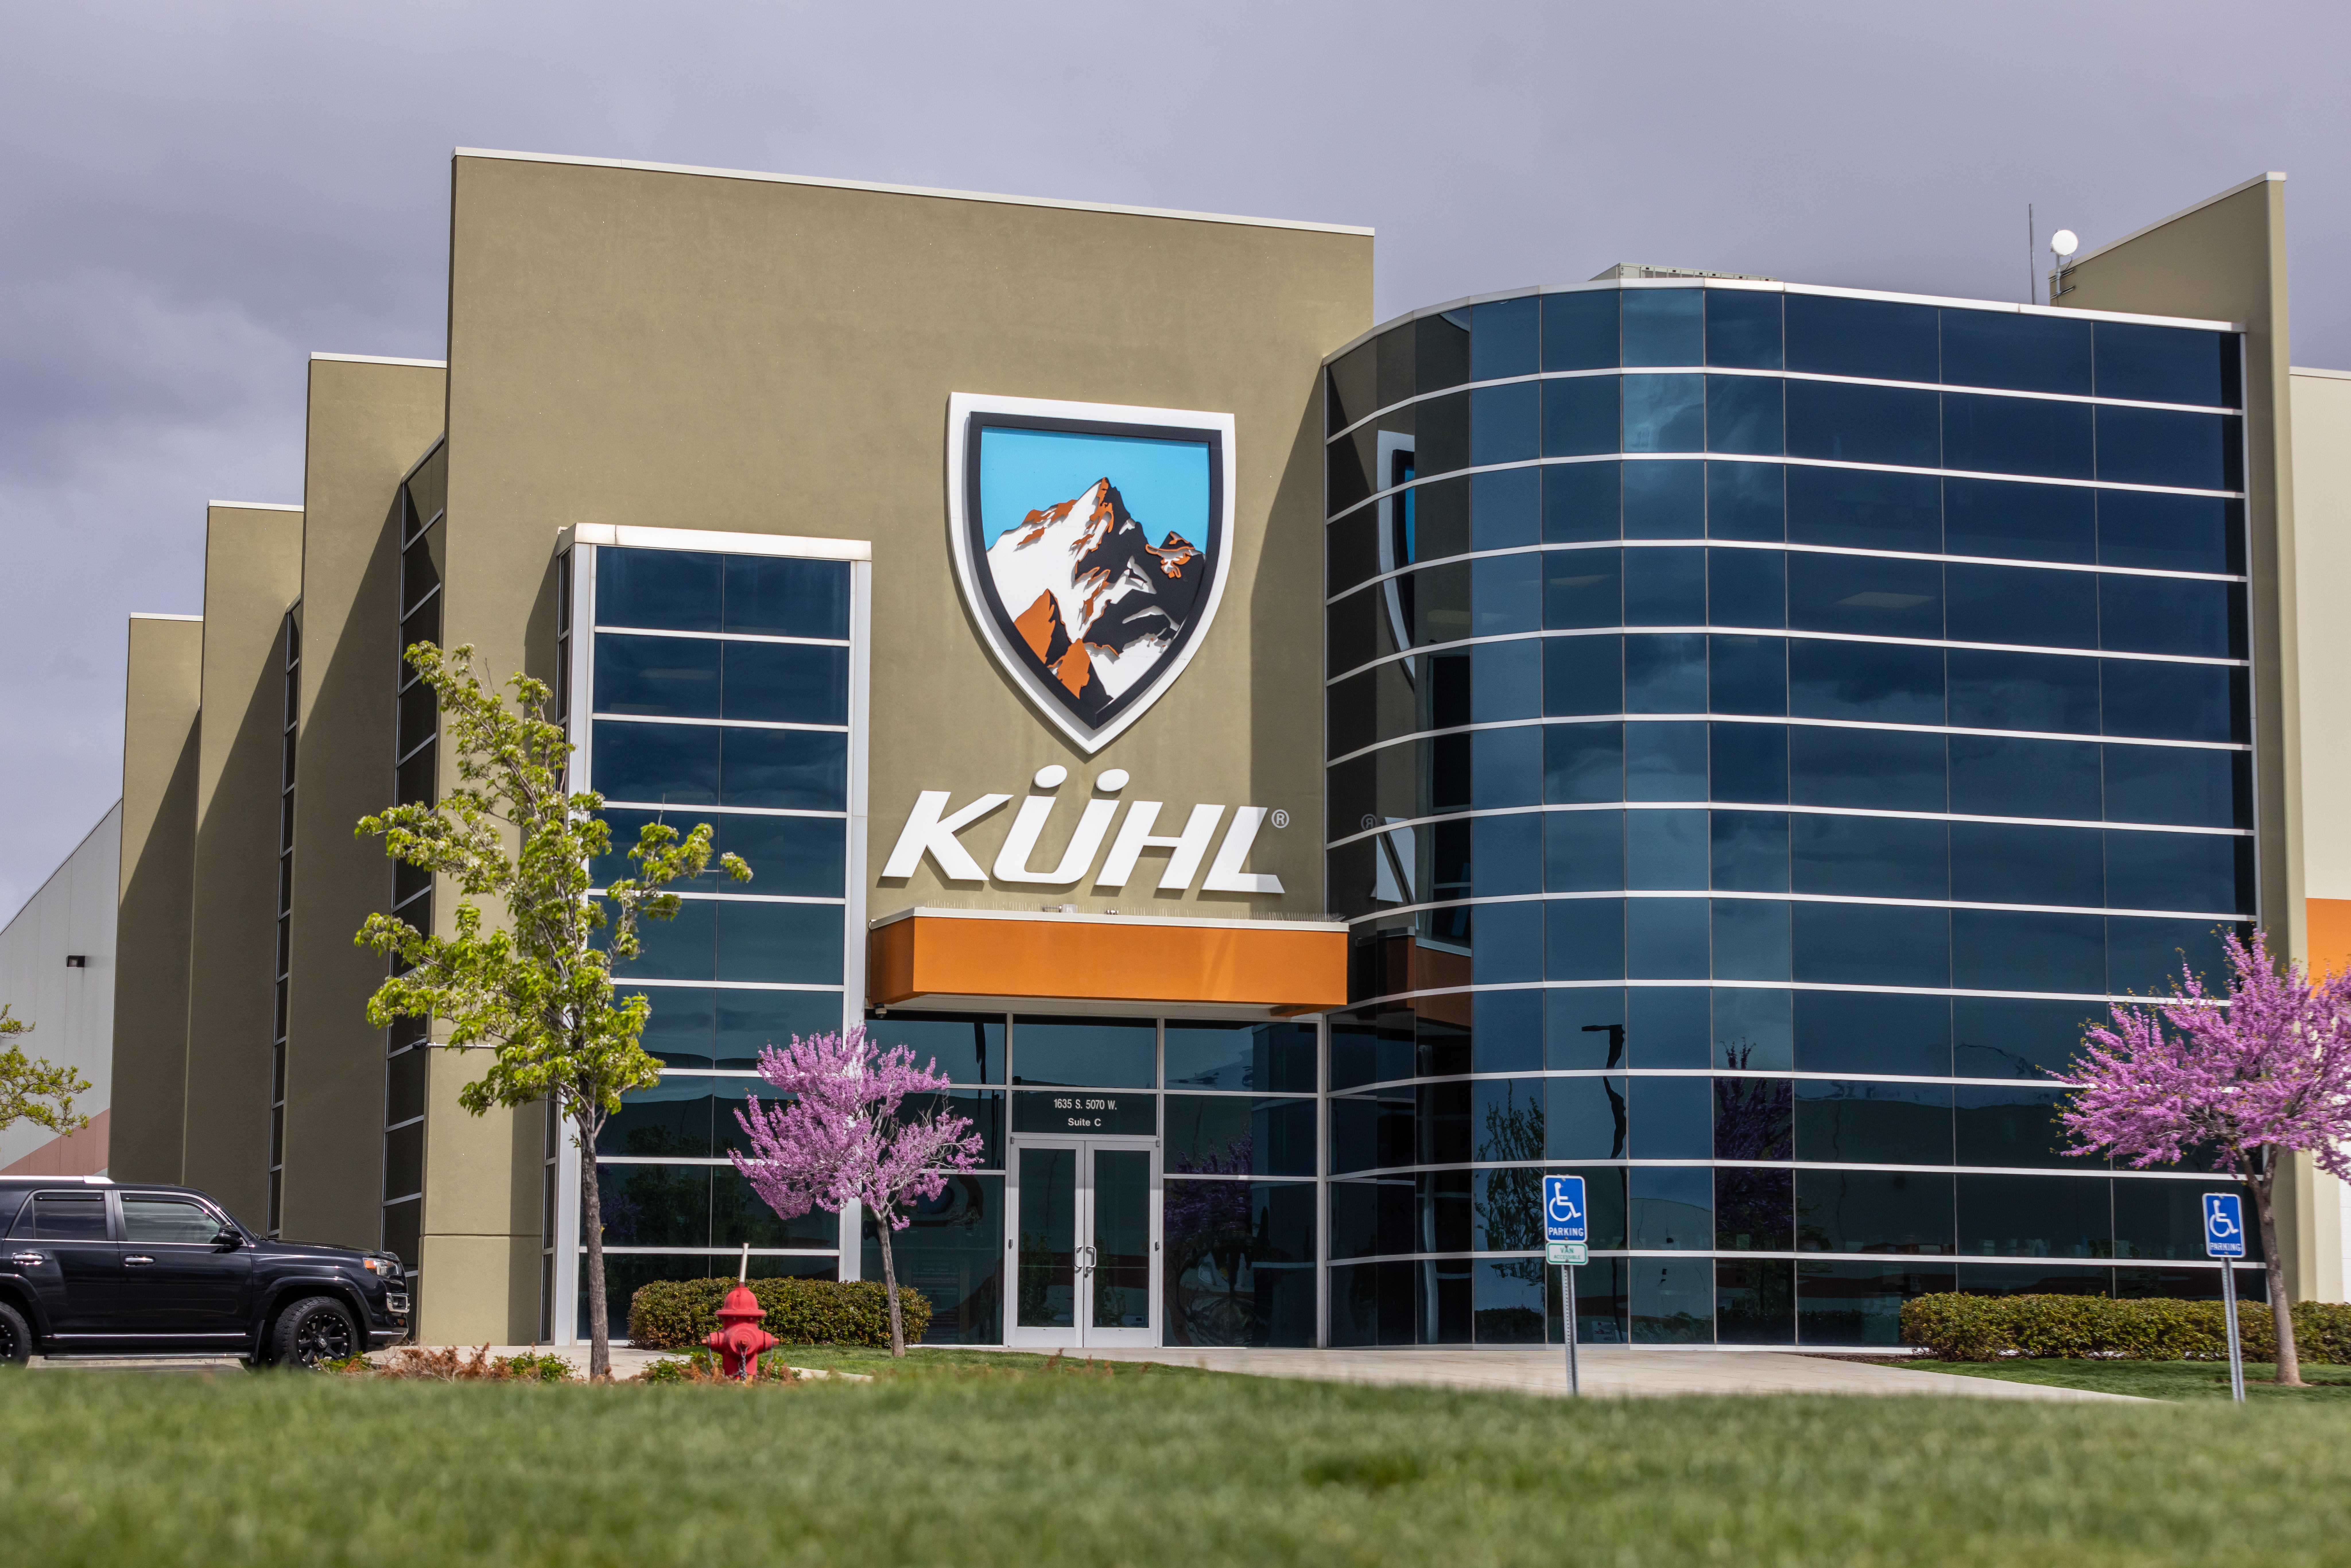 Kuhl Headquarters